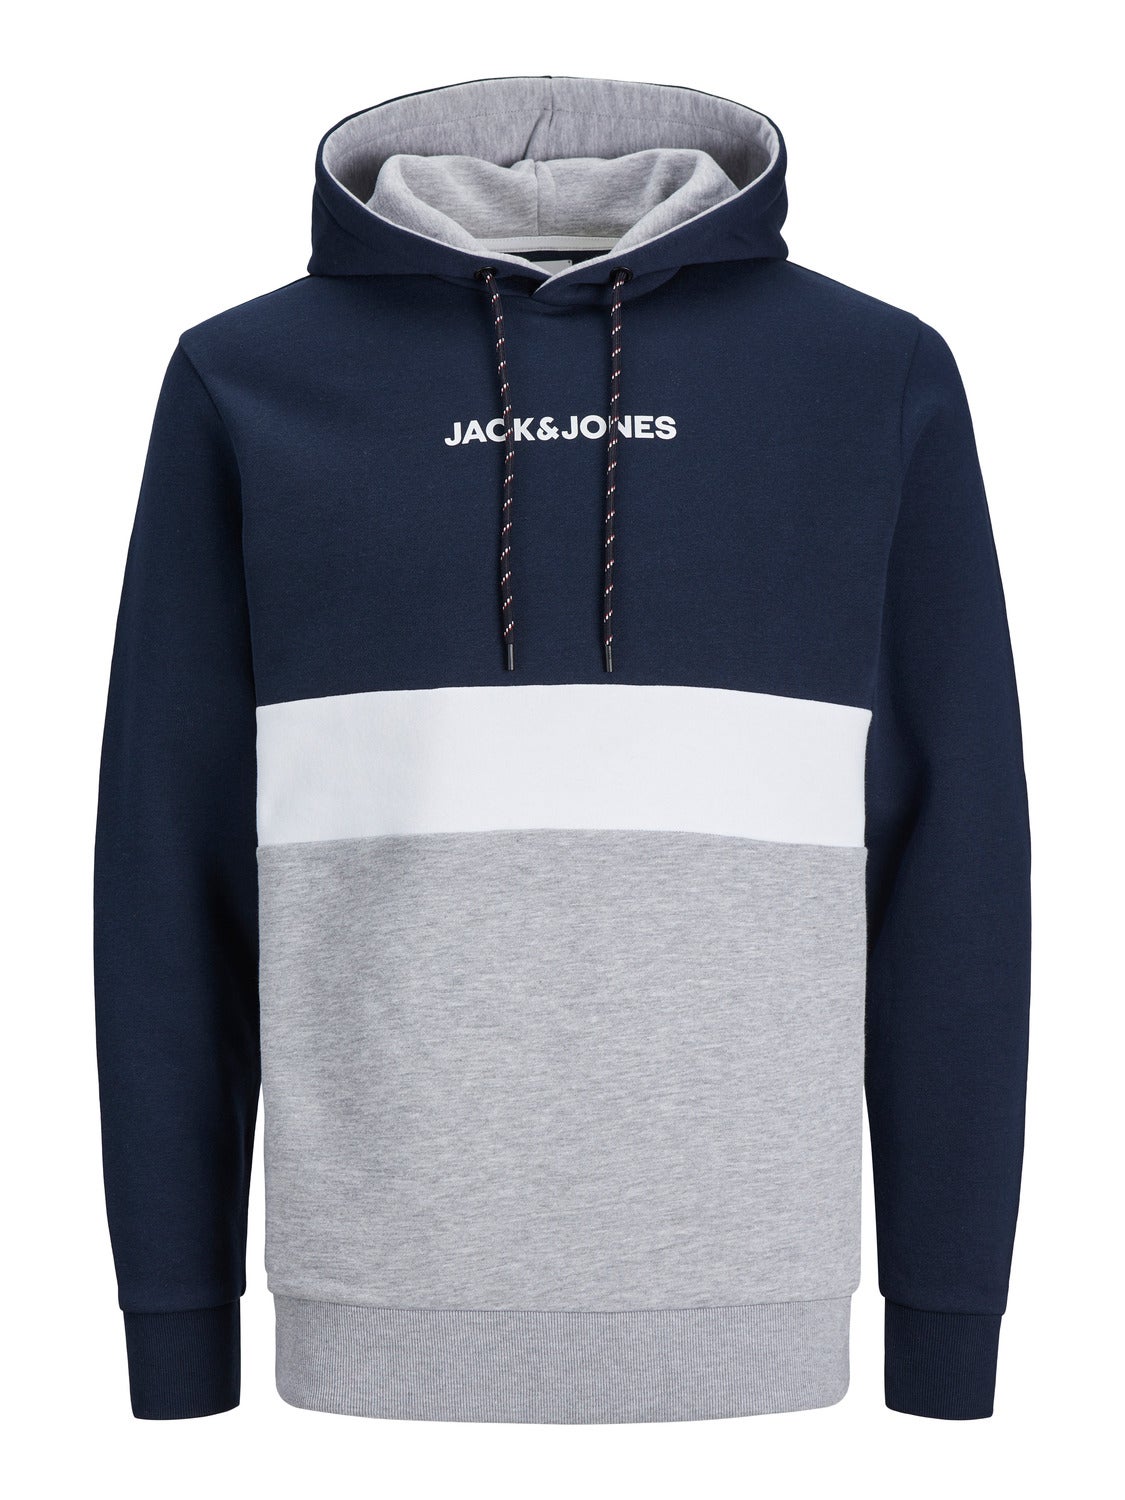 Jack & Jones Male Hoodie, Colour Block, Logo, Classic blue/fit